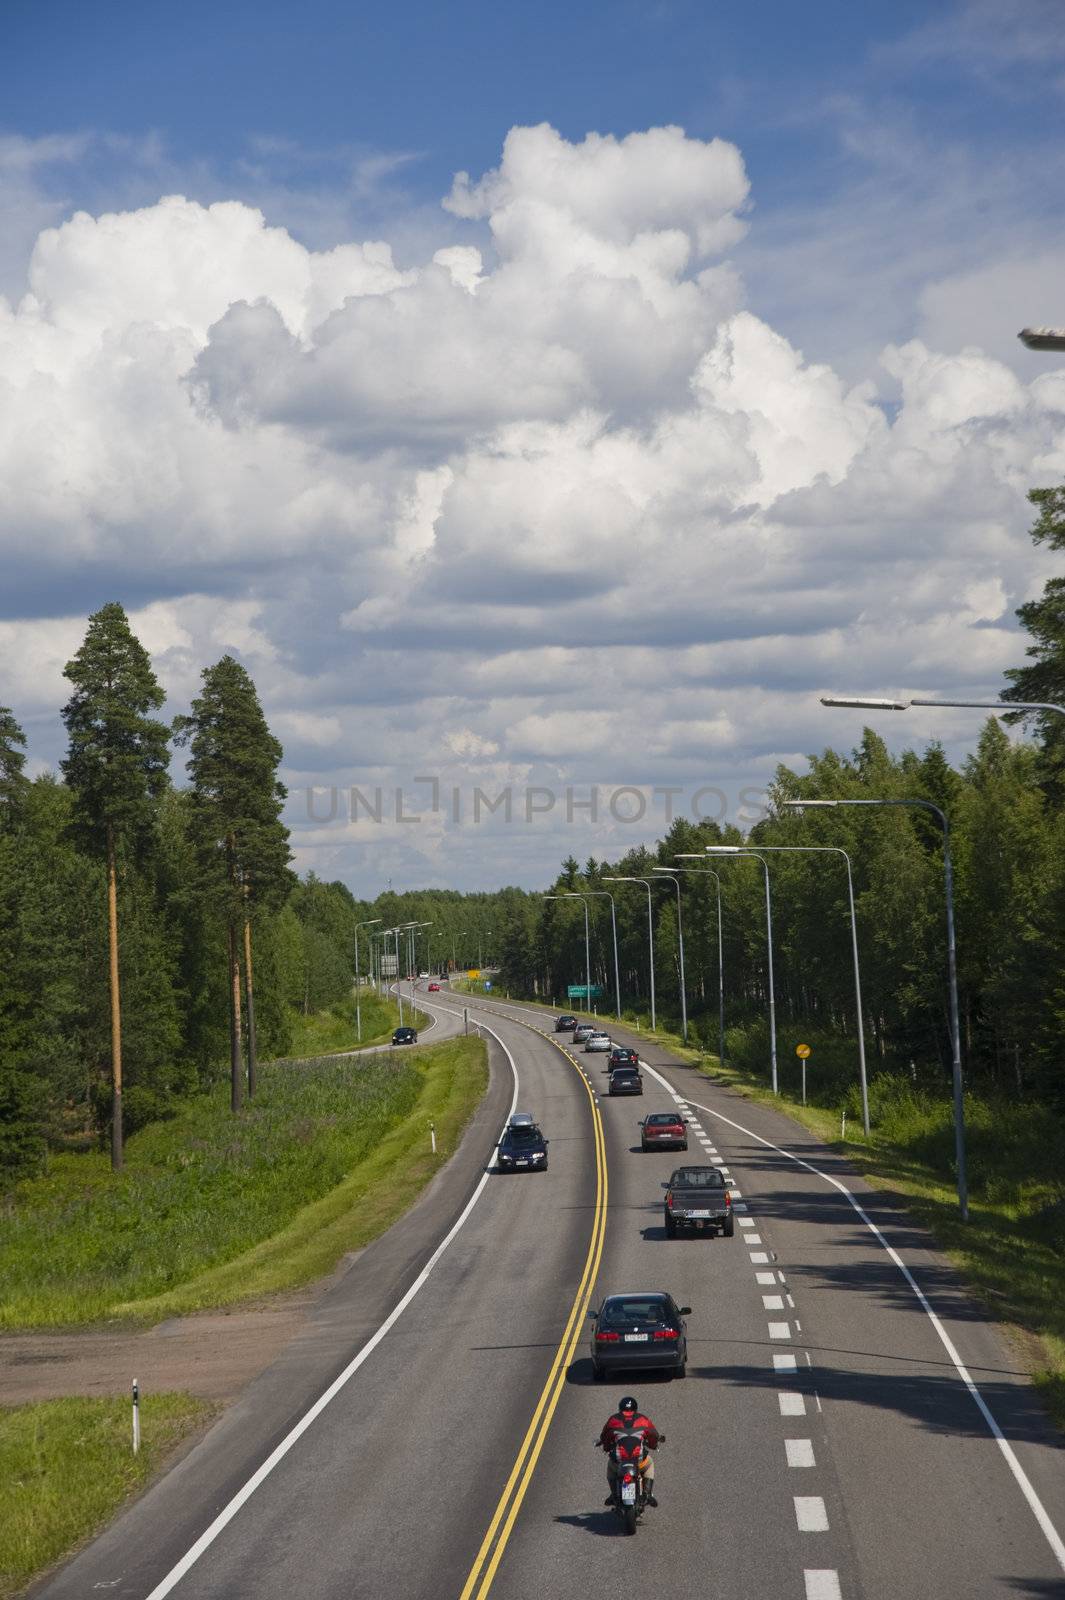 Motorway in Finland taken on July 2009